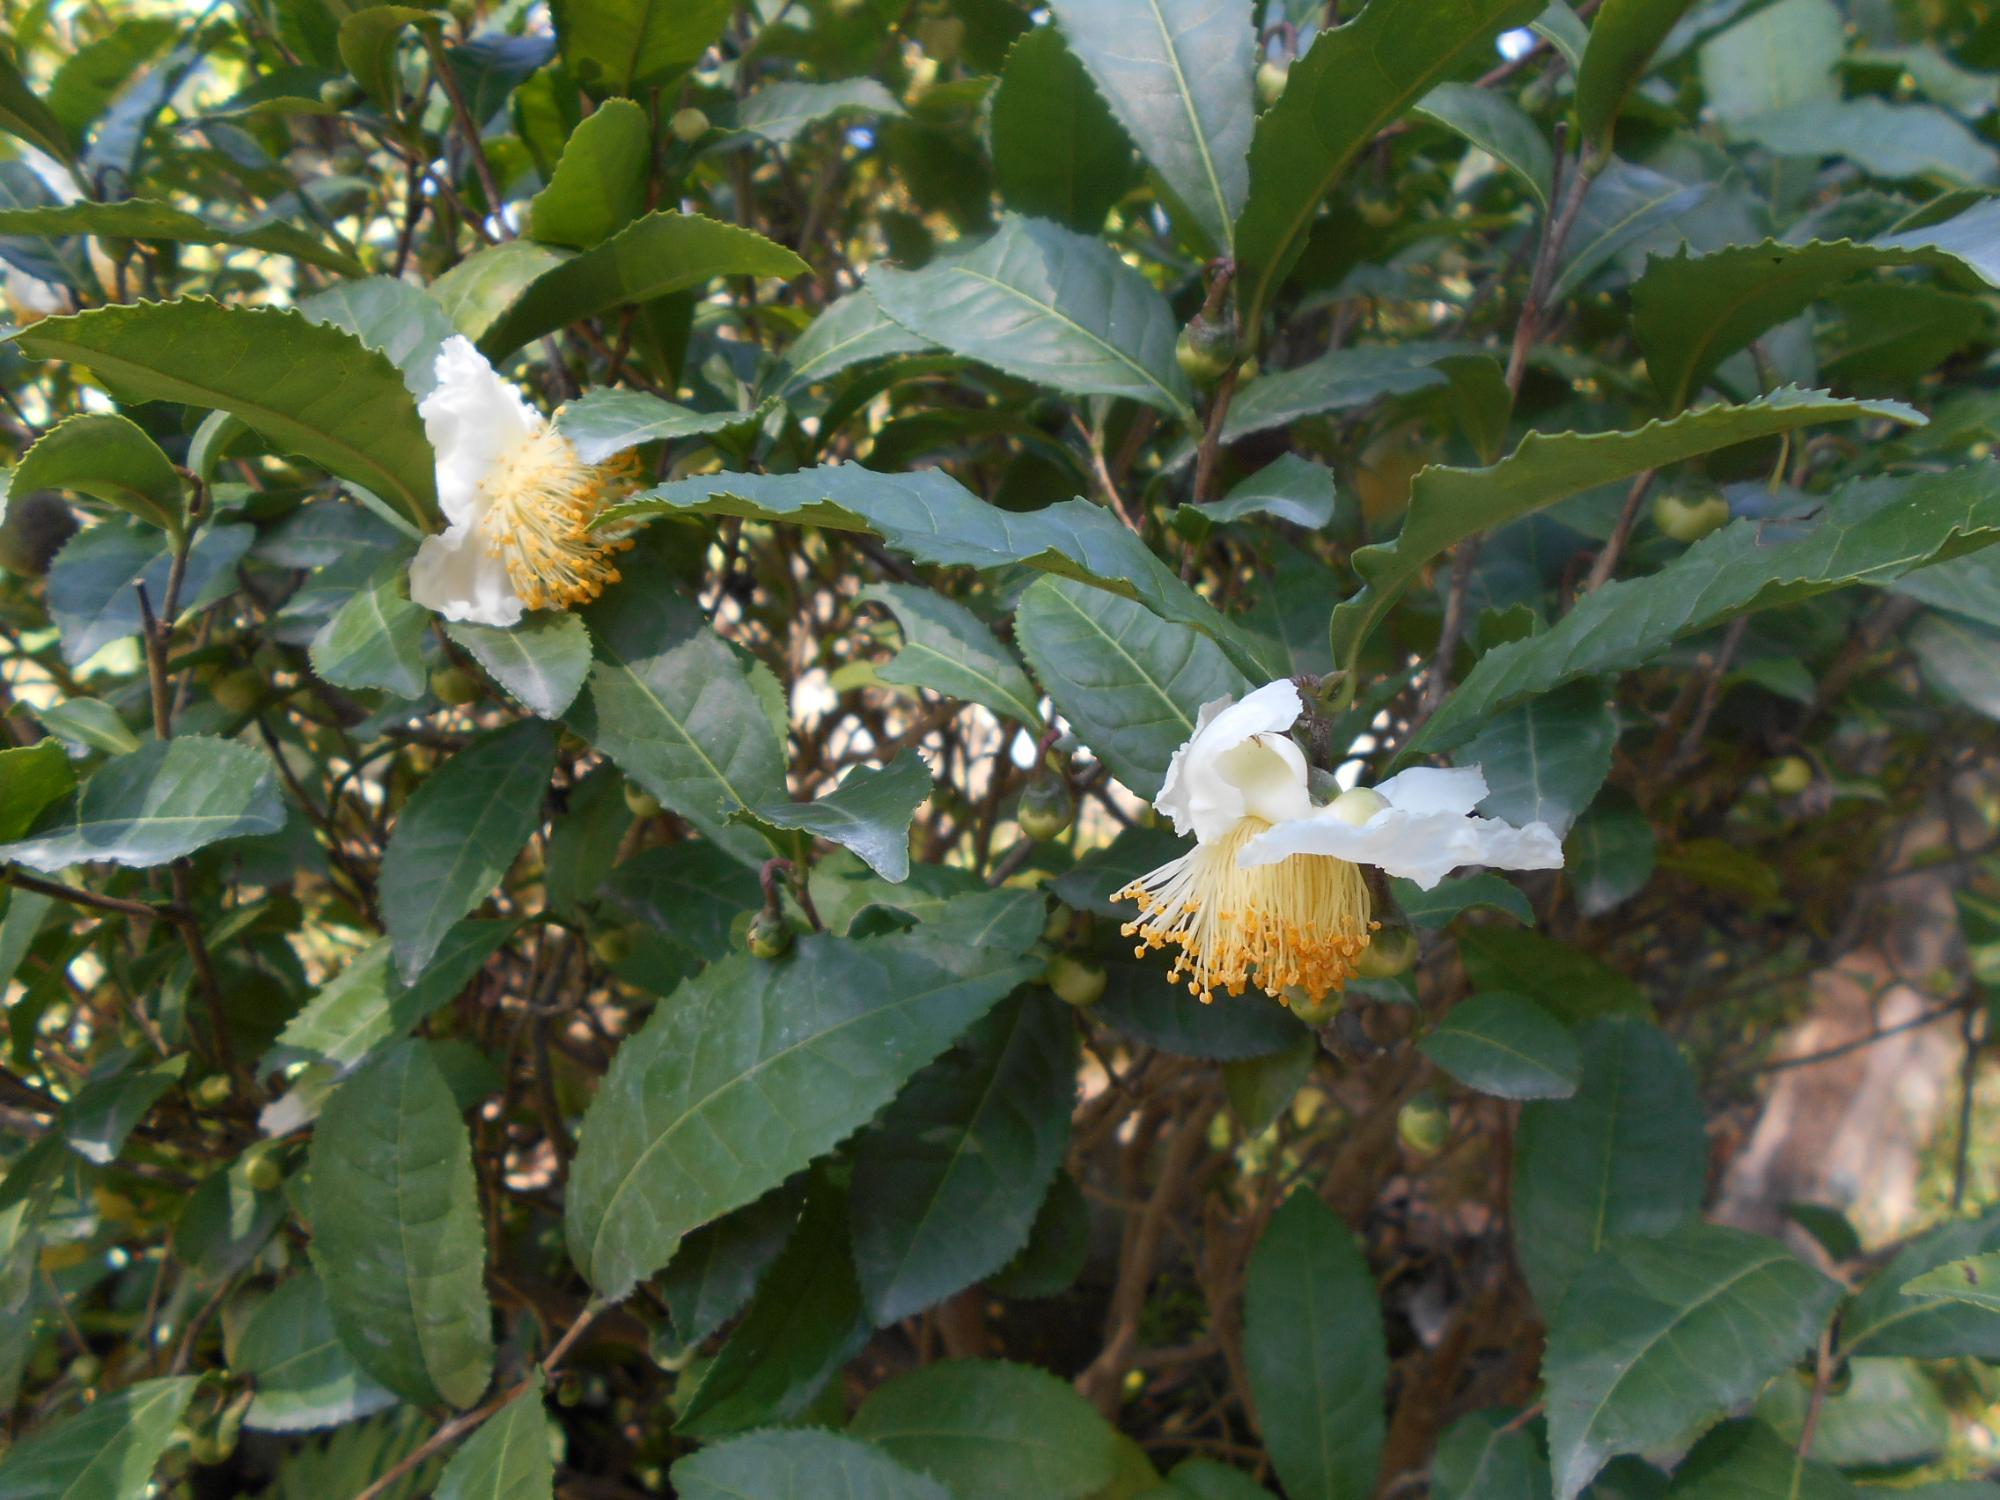 こちらは、薬草園の中段あたりにある、チャノキ(茶の木)の花です。短い柄でぶら下がるように、白い下向きの花を咲かせます。